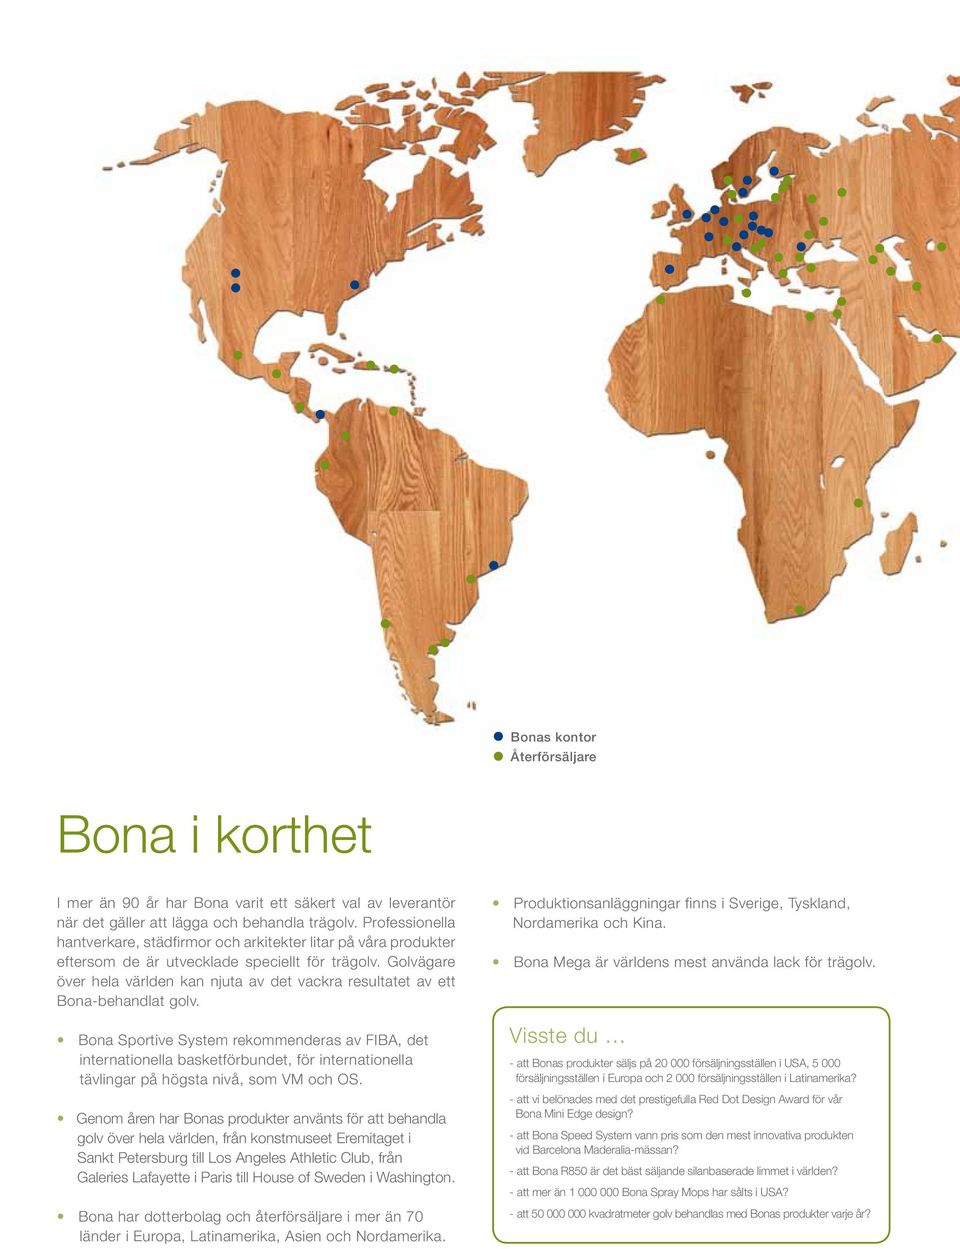 Golvägare över hela världen kan njuta av det vackra resultatet av ett Bona-behandlat golv.